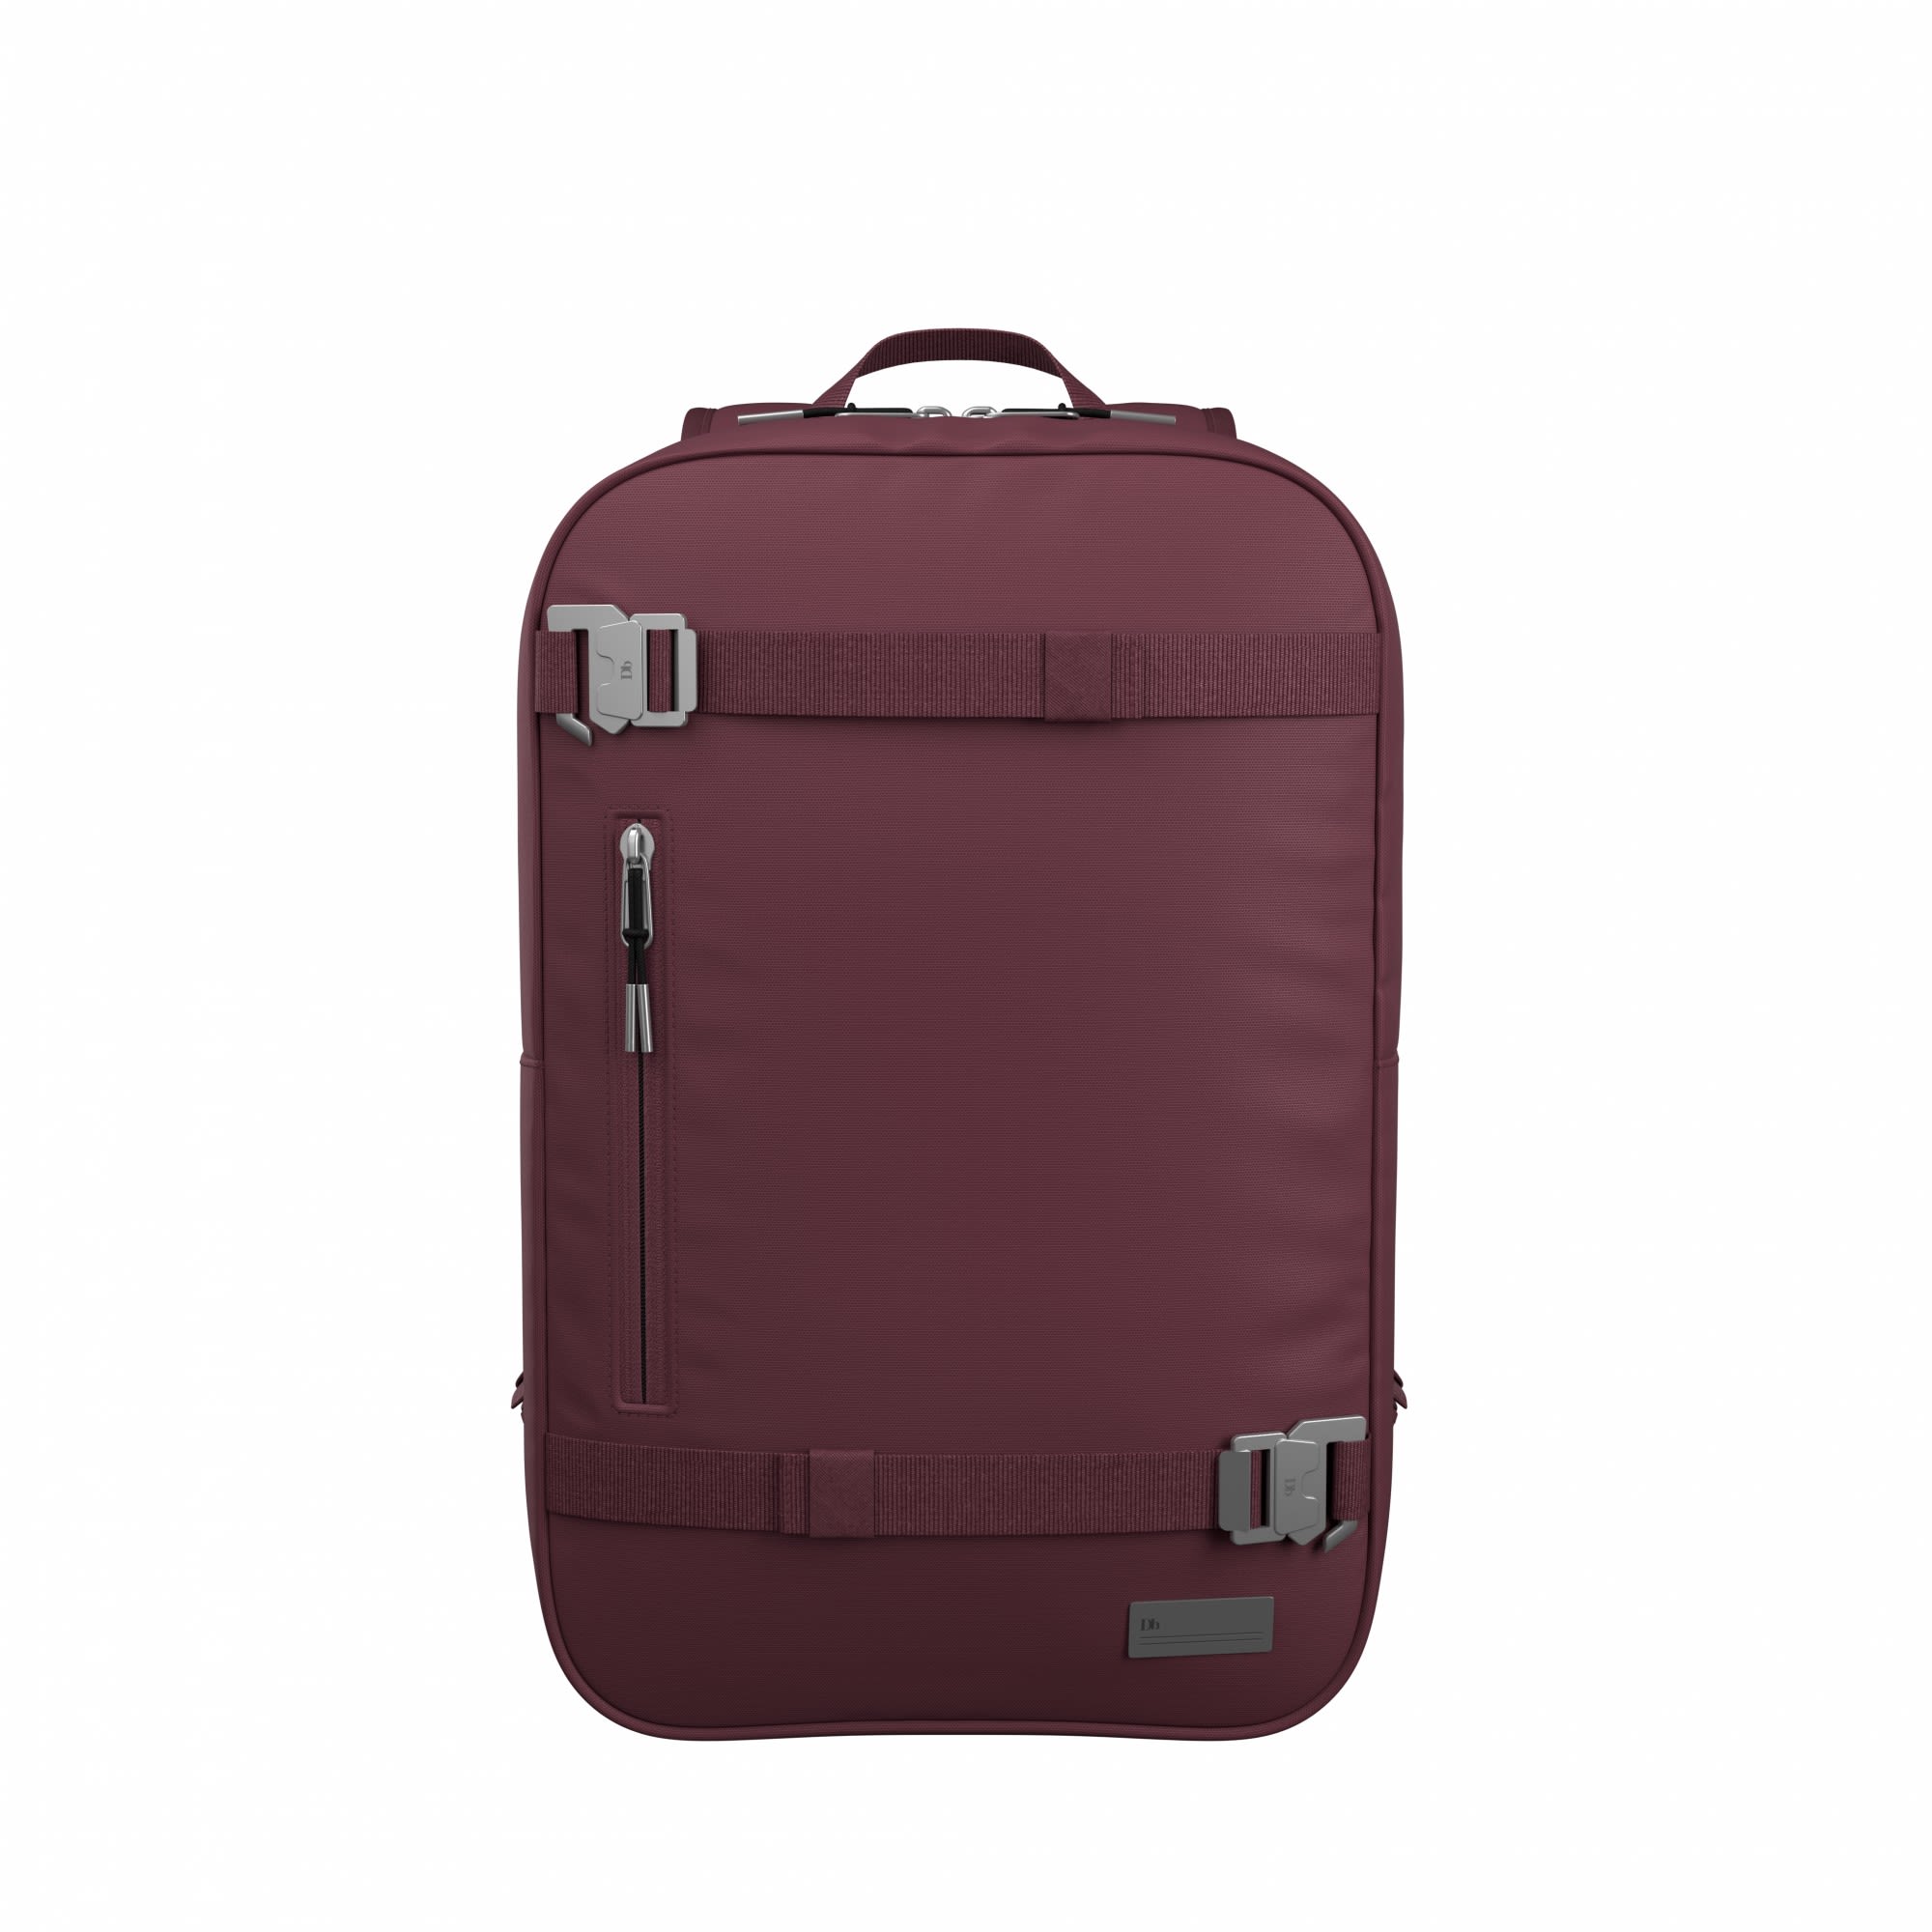 Db THE Vrldsvan 17L Backpack Lila- Daypacks- Grsse 17l - Farbe Raspberry